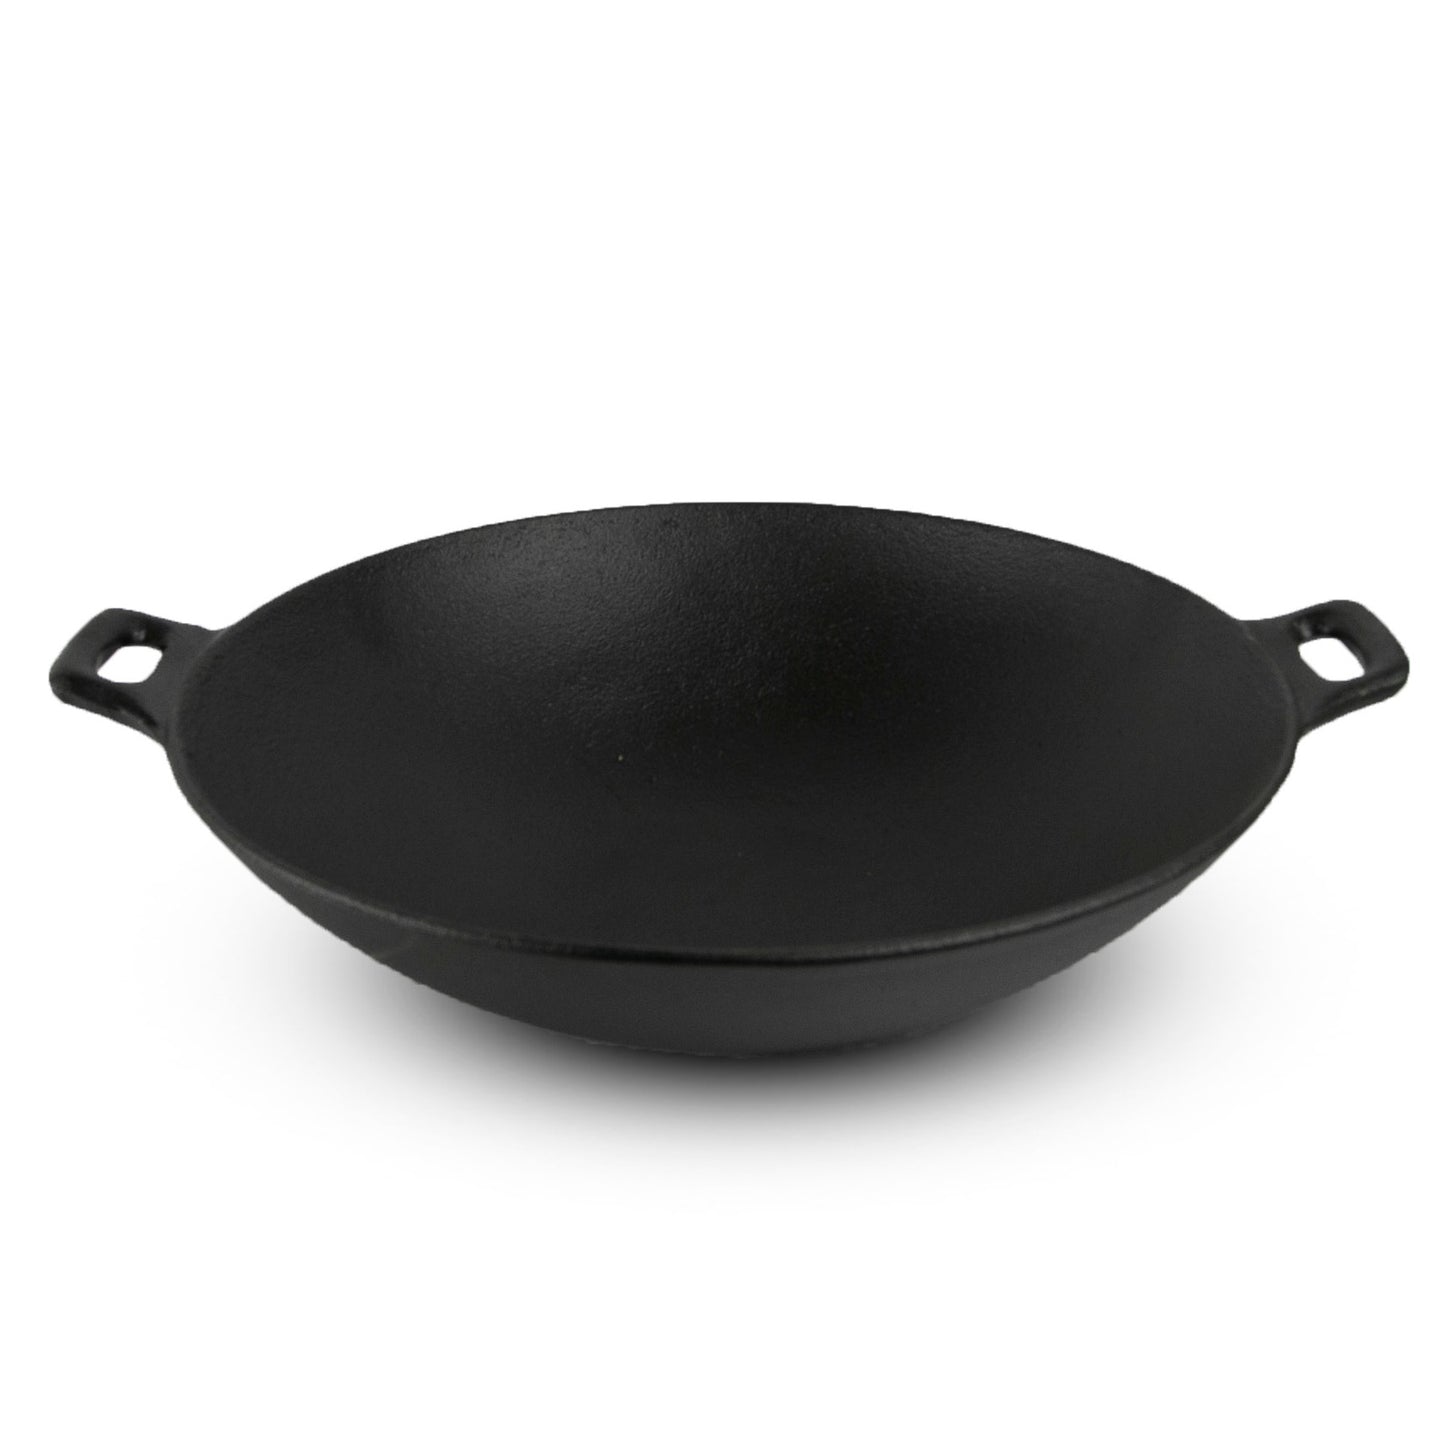 (OLD) Pre-seasoned wok with lid, DIA 12"